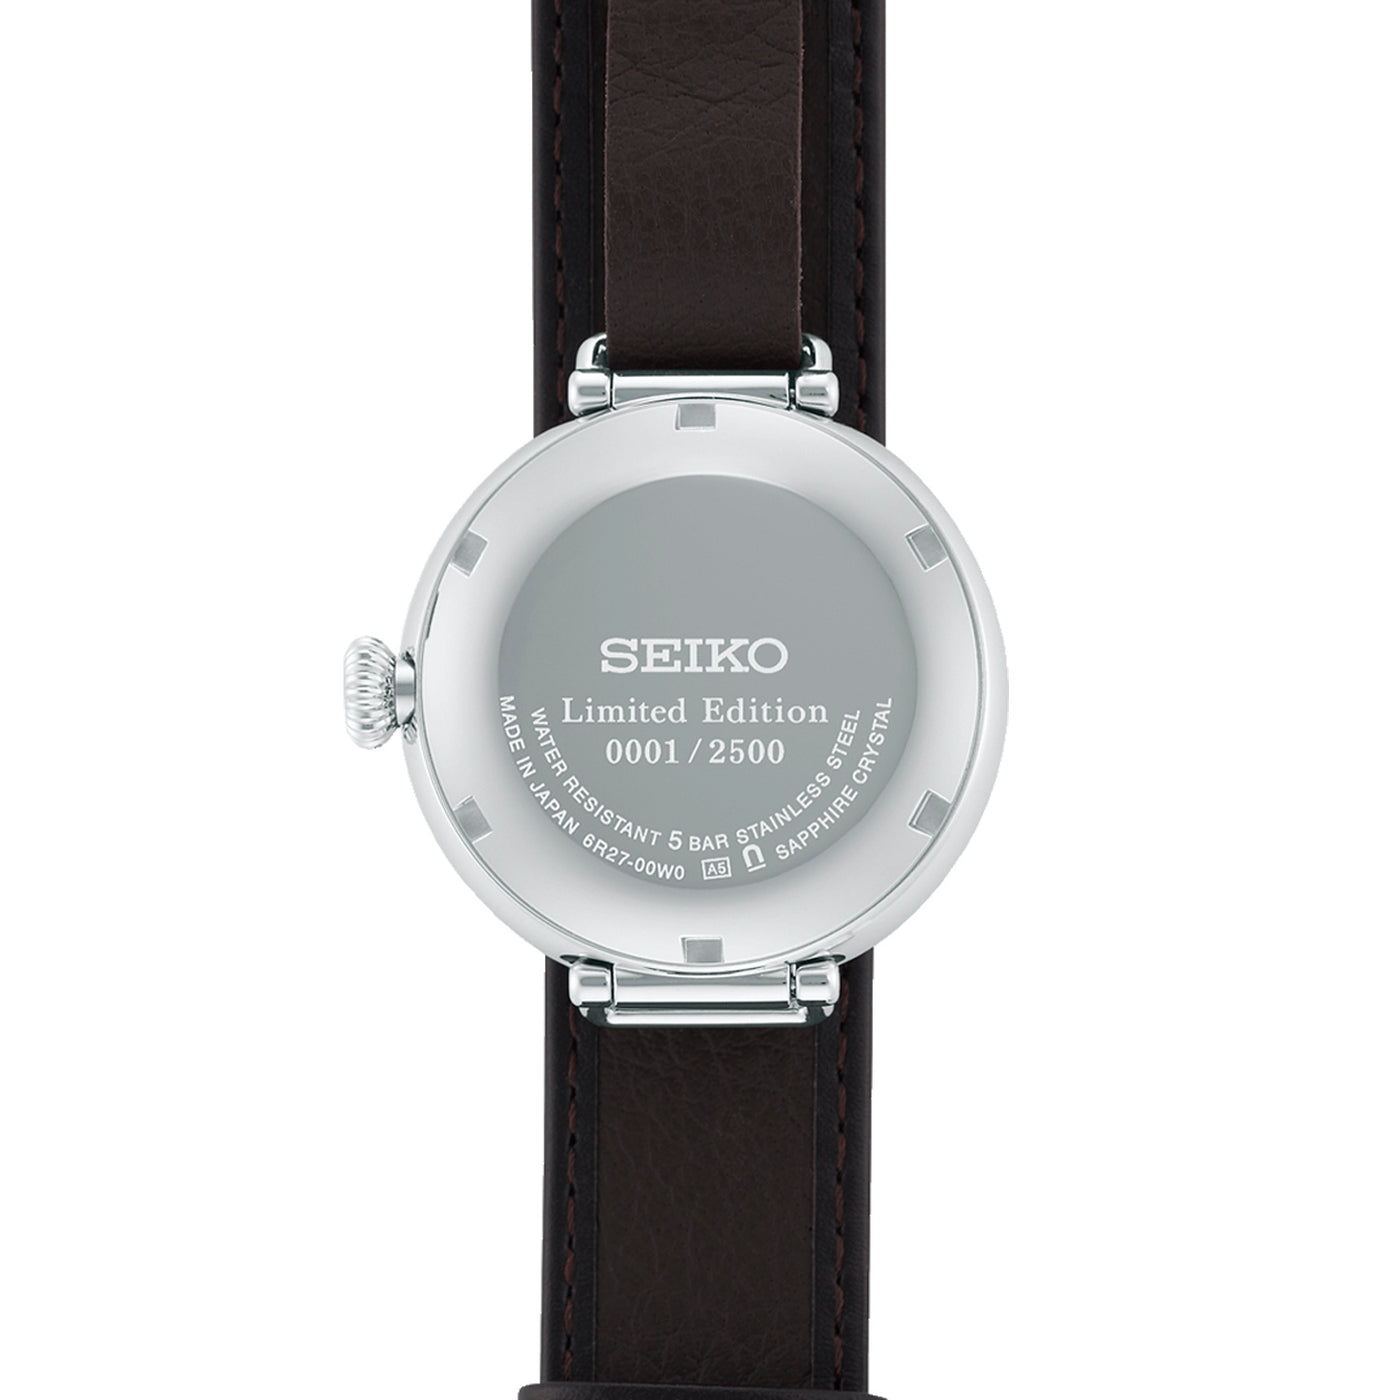 Seiko Presage 110th Anniversary Limited Edition Automatic – SPB359